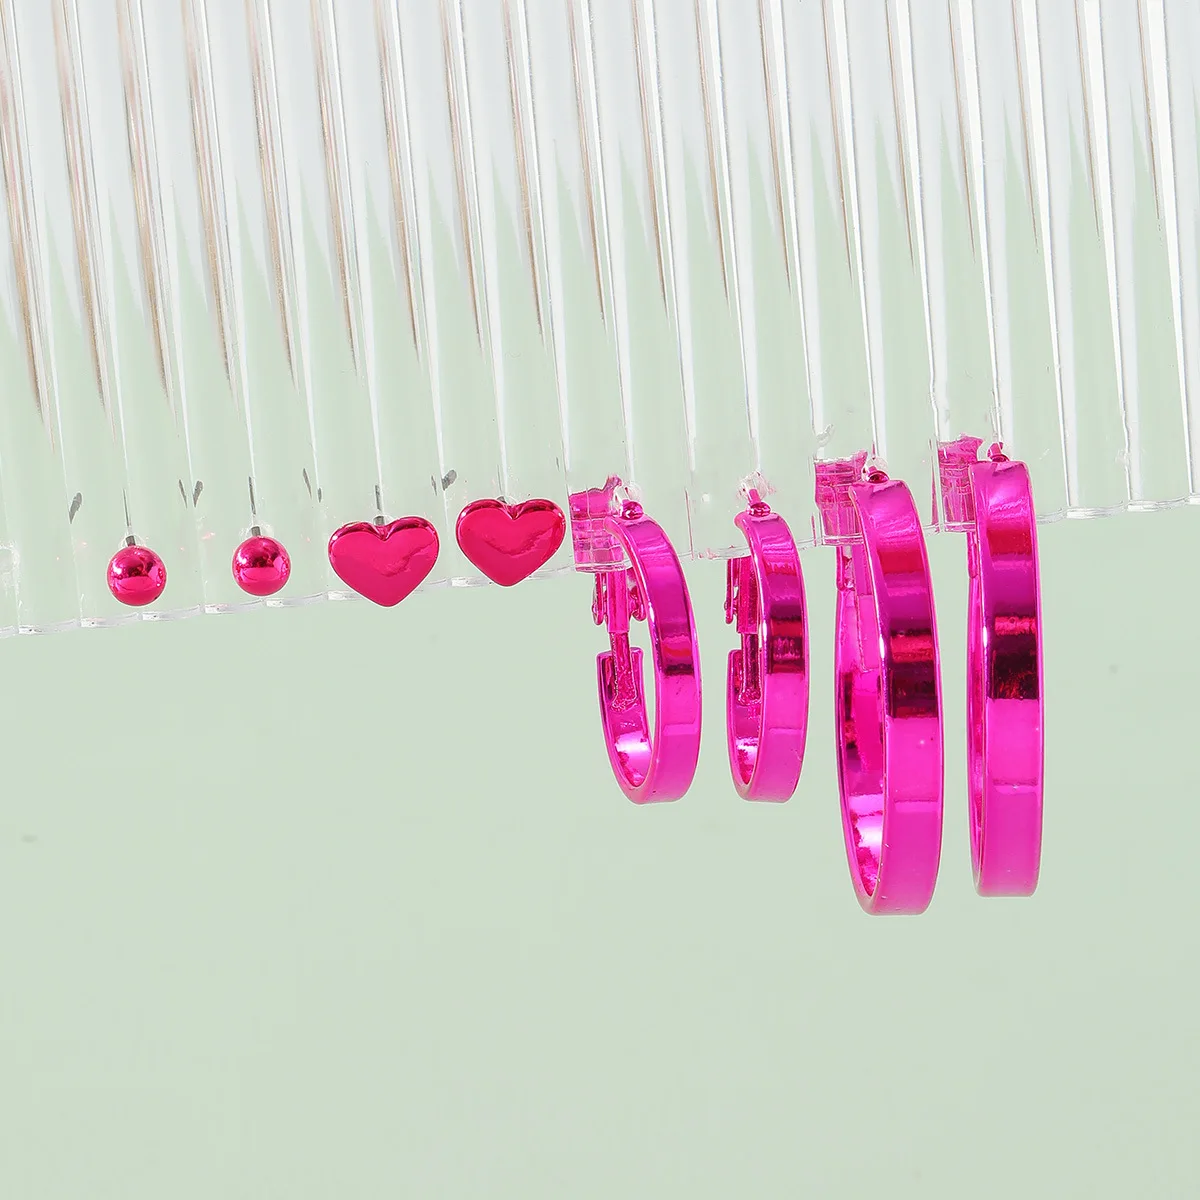 

Серьги-кольца Luna Chiao ярко-розового цвета, набор сережек-гвоздиков в форме сердца для женщин